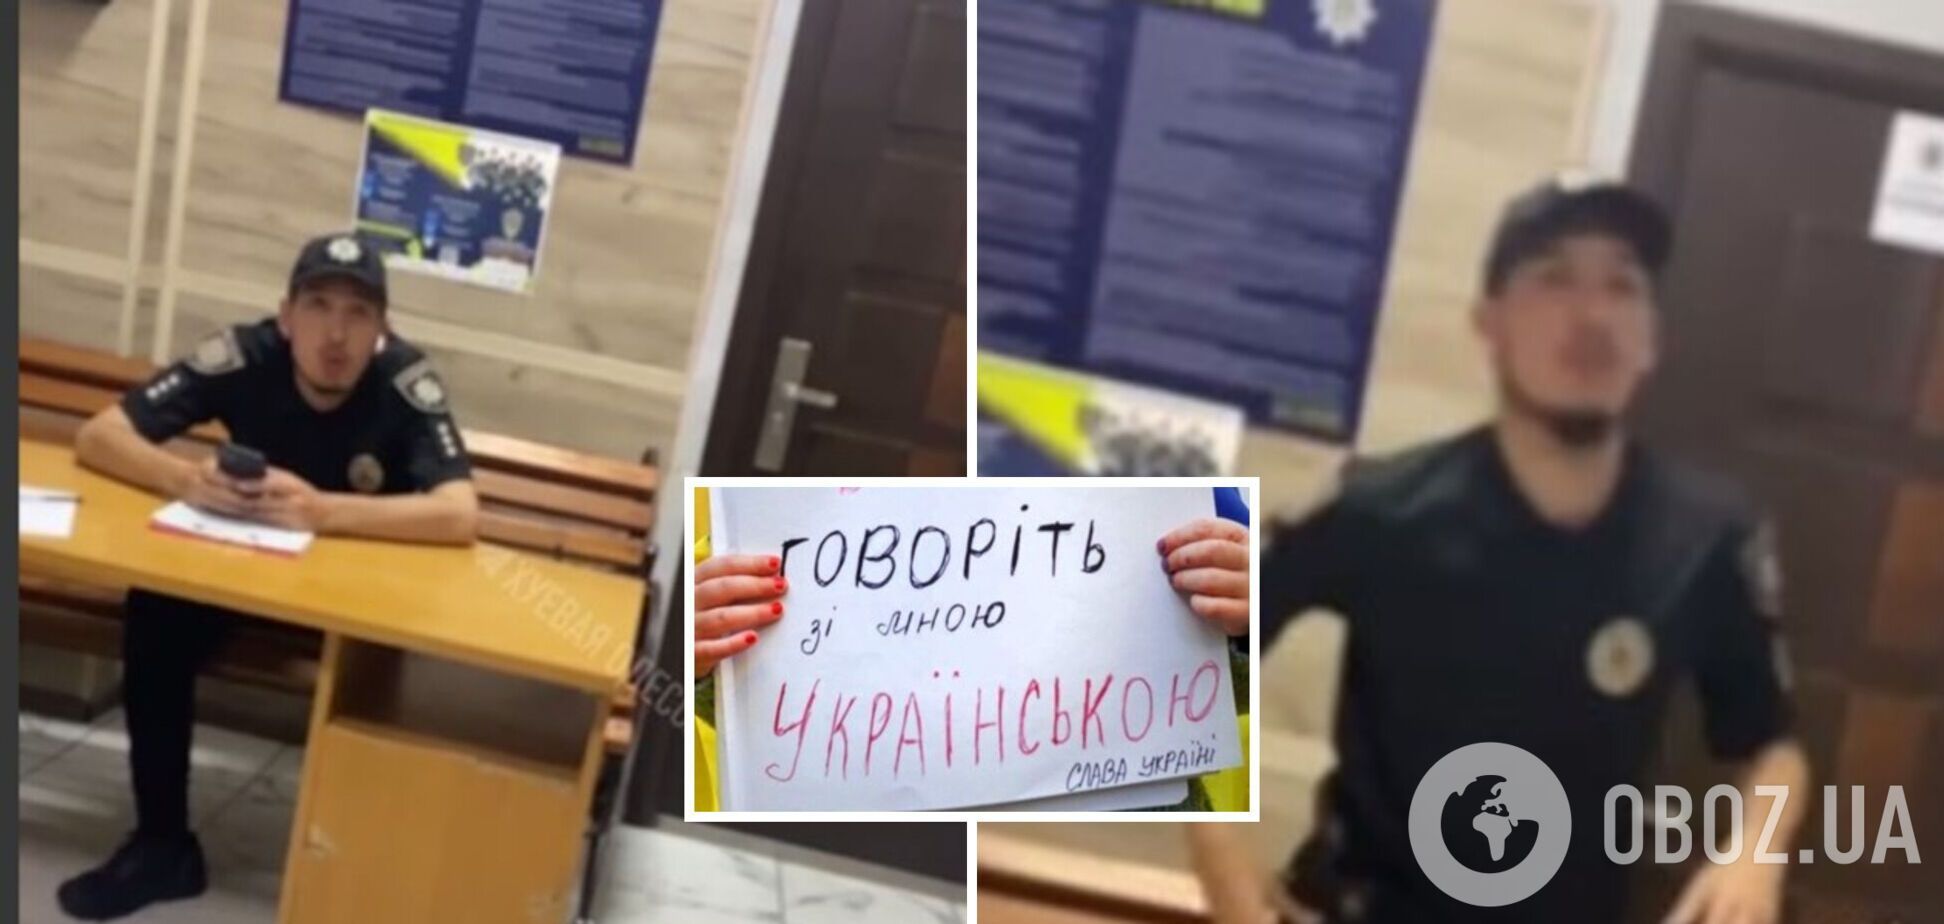 'Понаїхали': на Одещині відсторонили поліцейських через російську мову. Відео